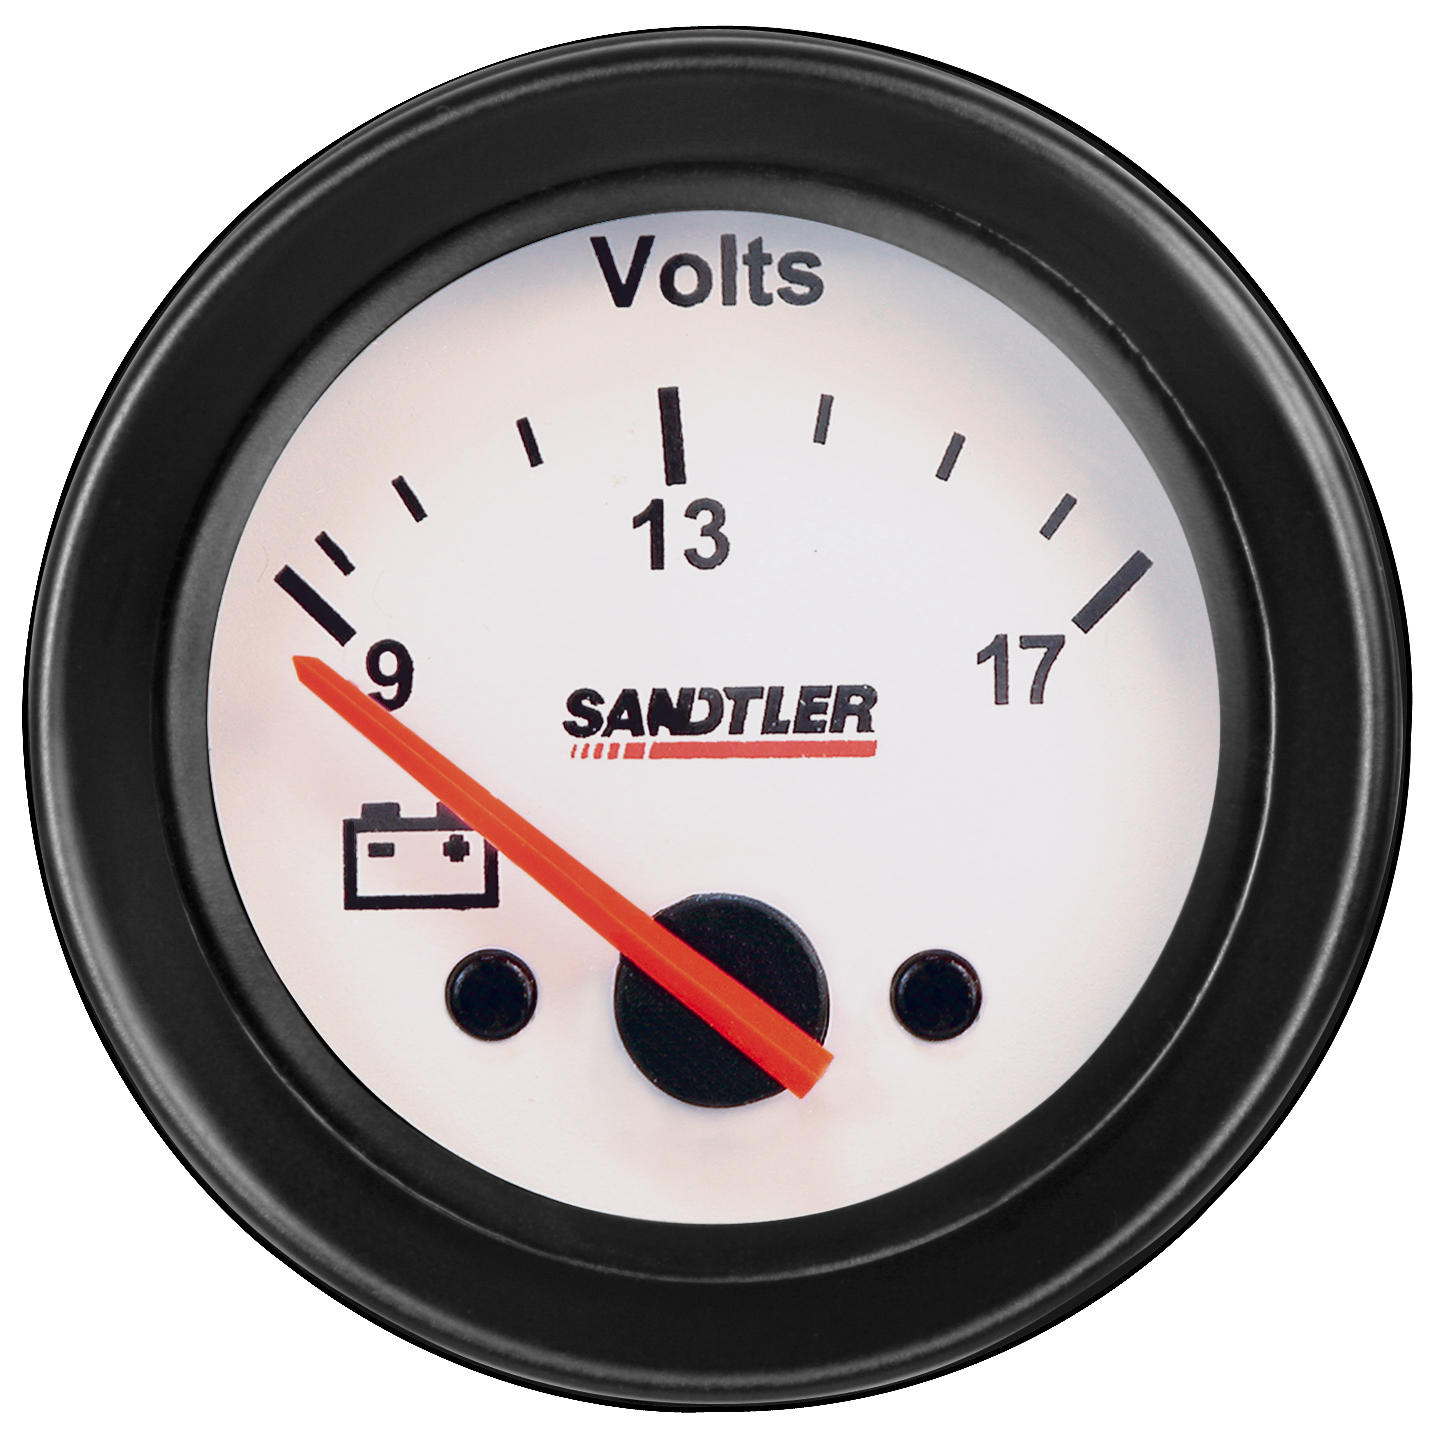 Sandtler Voltmeter